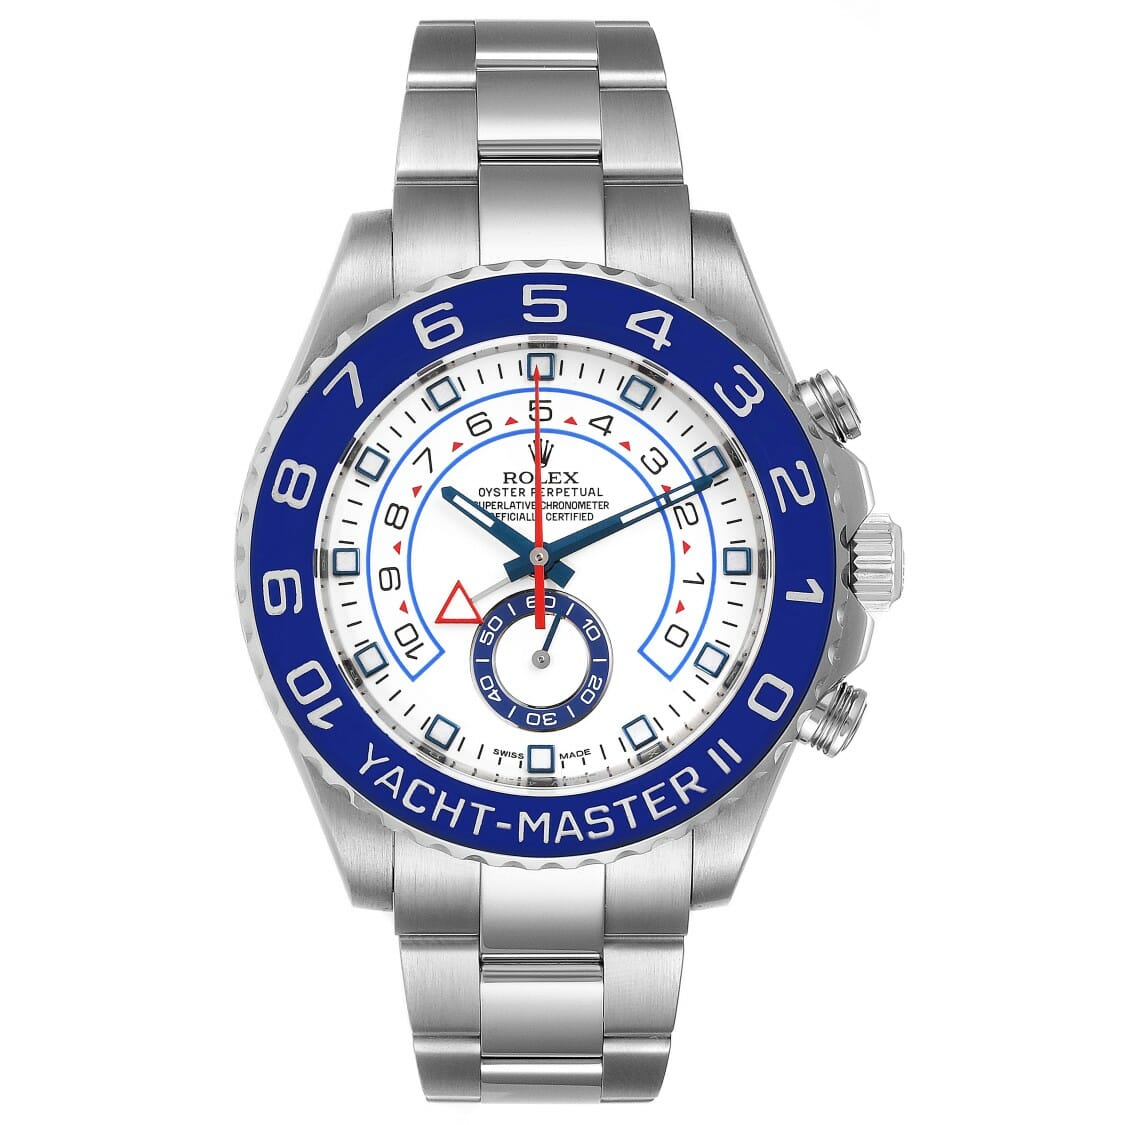 ساعة رولكس يخت ماستر II 44 سيراكروم باللون الأزرق للرجال 116680 المملكة العربية السعودية